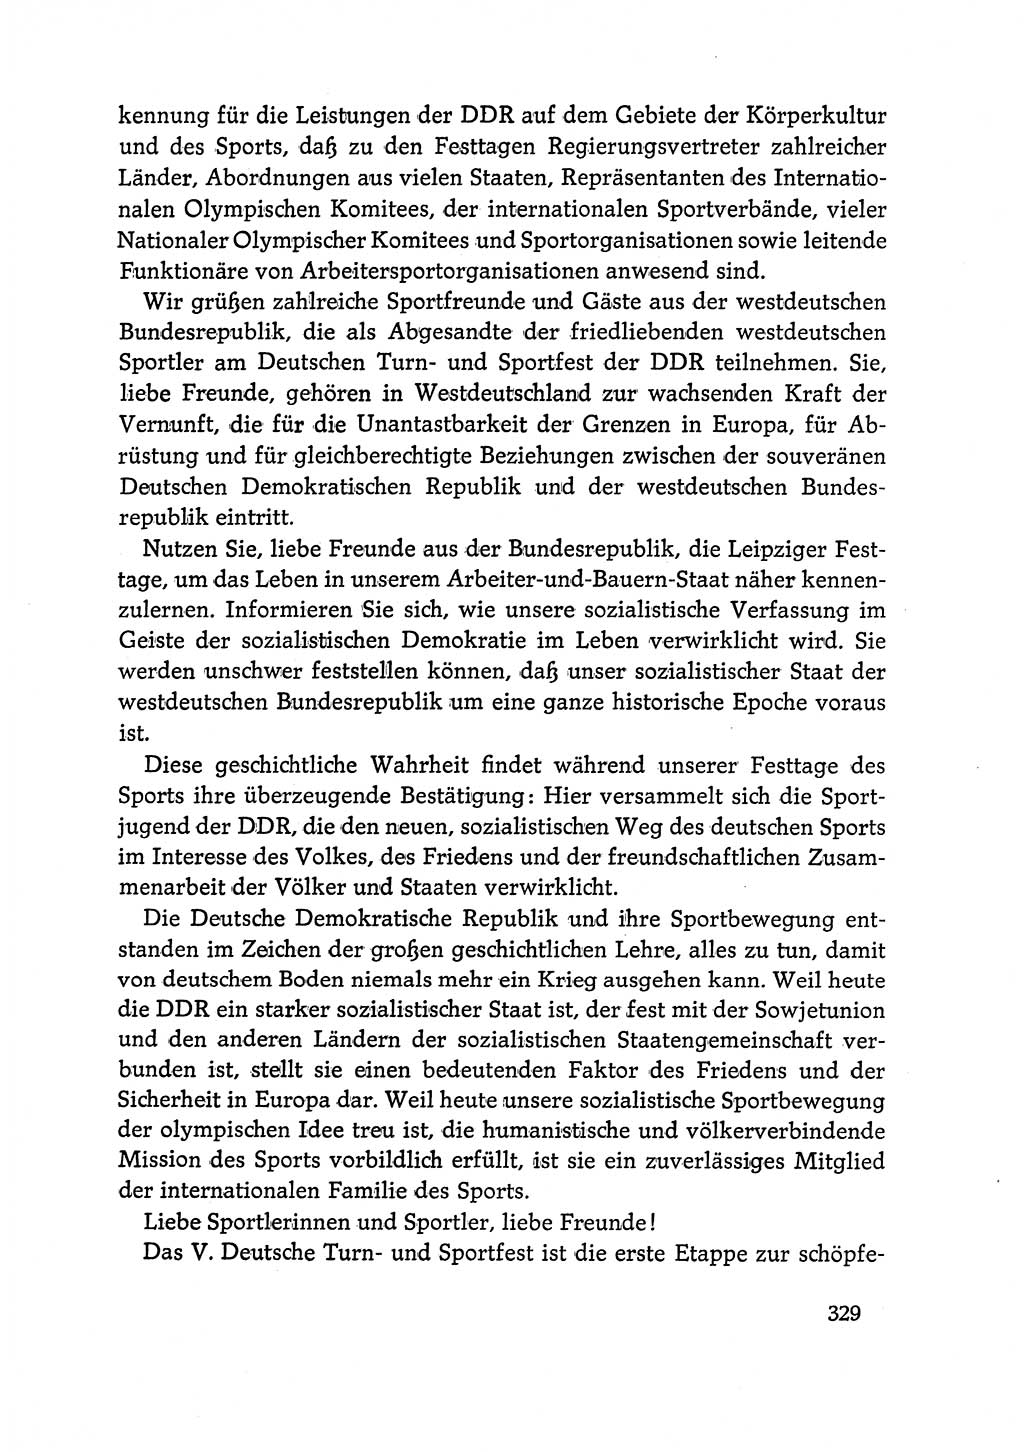 Dokumente der Sozialistischen Einheitspartei Deutschlands (SED) [Deutsche Demokratische Republik (DDR)] 1968-1969, Seite 329 (Dok. SED DDR 1968-1969, S. 329)